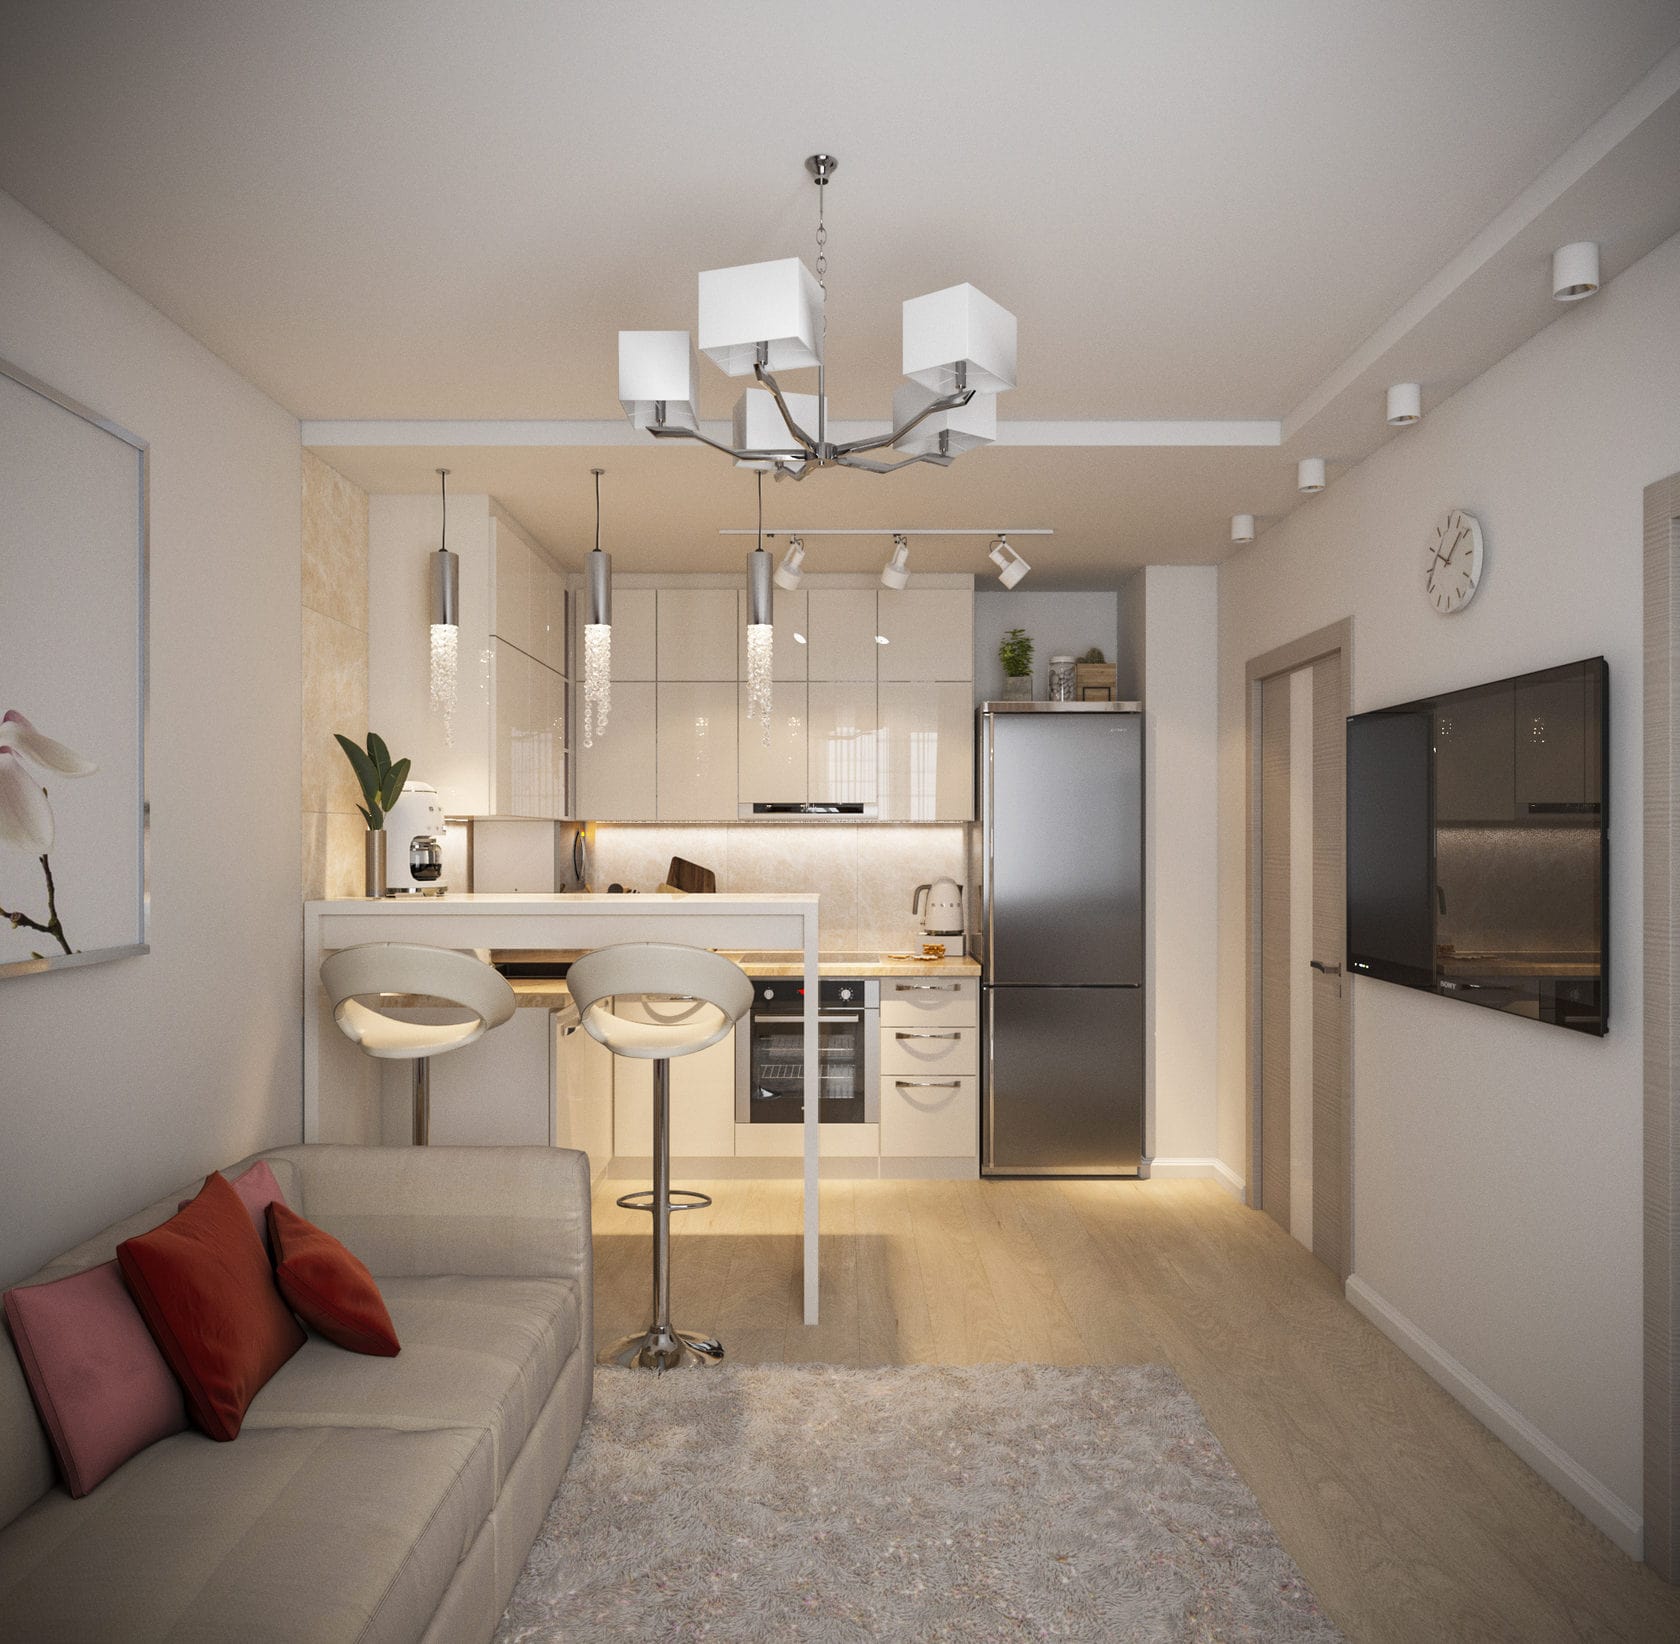 Дизайн кухни-гостиной 16 кв.м: фото интерьера, идеи по планировке, отделке, зонированию, меблировке кухни-гостиной 16 квадратных метров